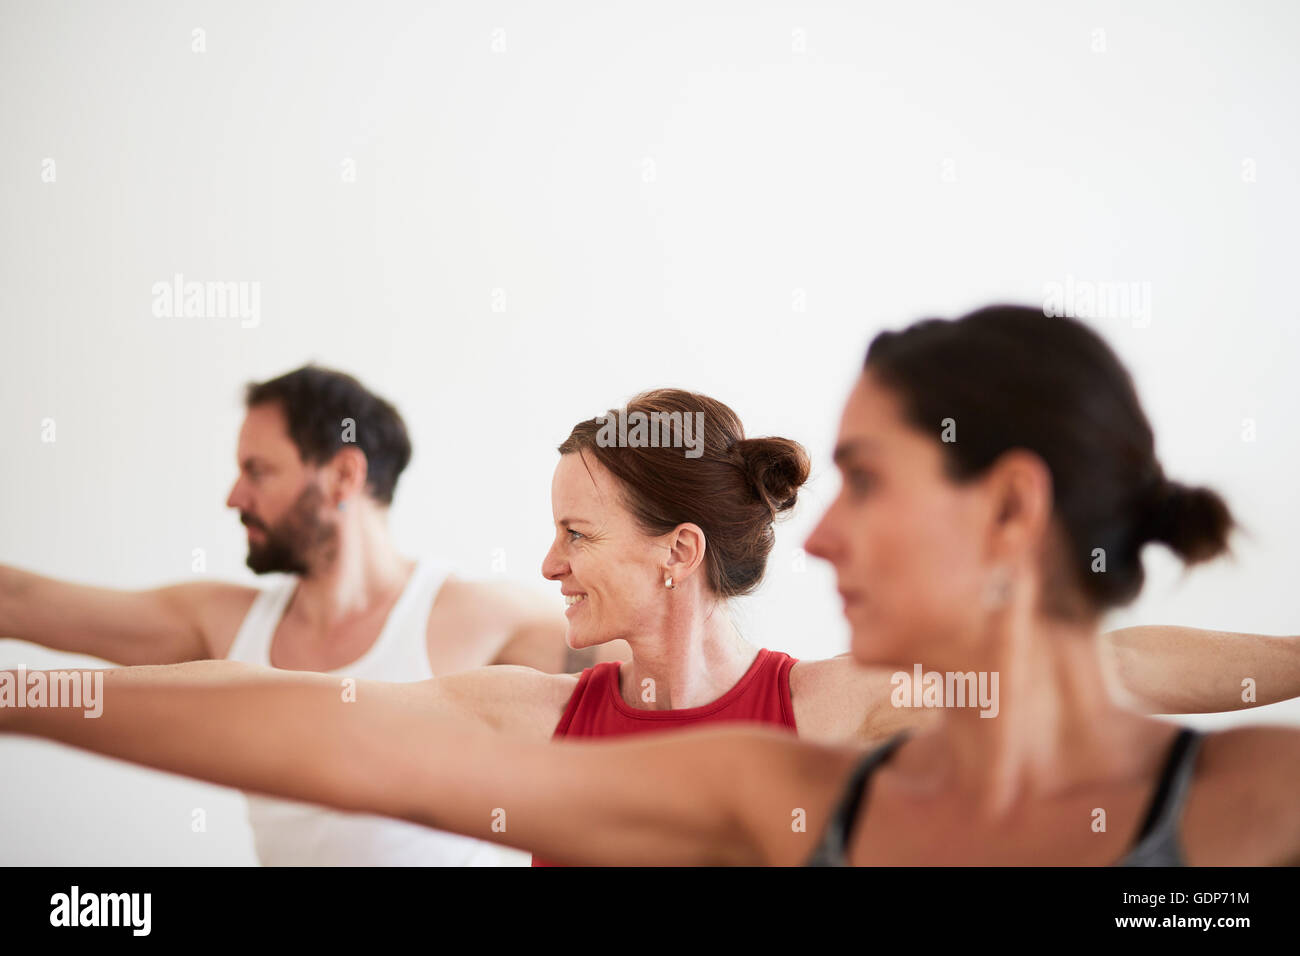 Persone in esercizio i bracci di studio aperto in posizione di yoga Foto Stock